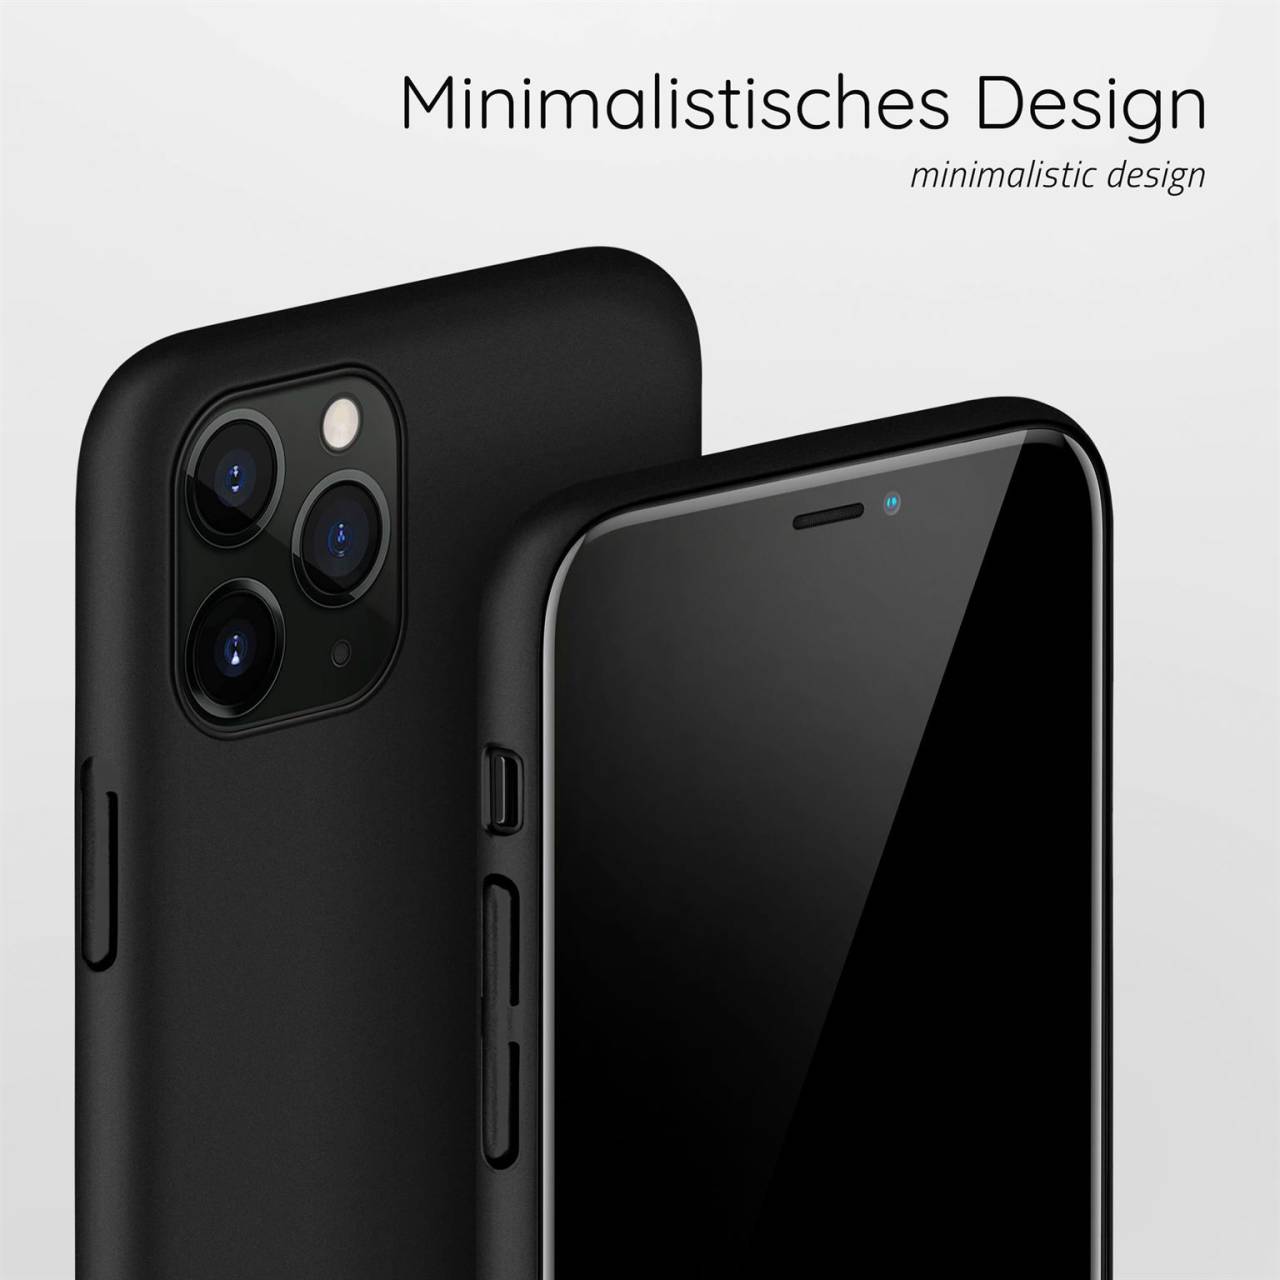 moex Alpha Case für Apple iPhone 11 Pro – Extrem dünne, minimalistische Hülle in seidenmatt